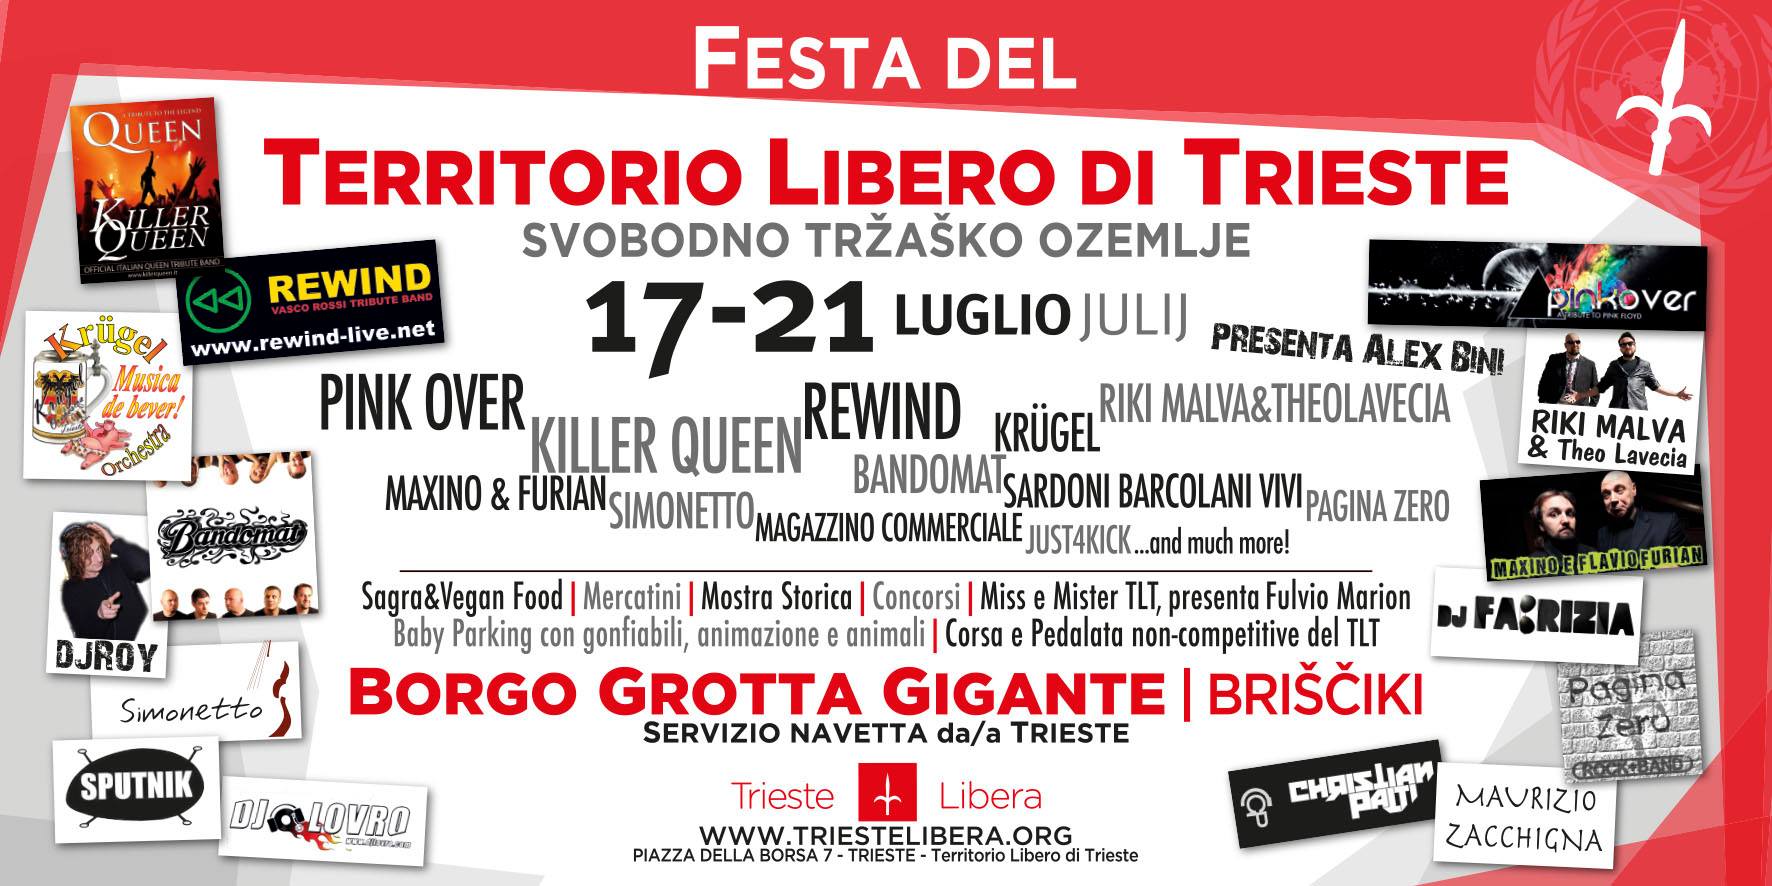 Festa del Territorio Libero di Trieste 2013